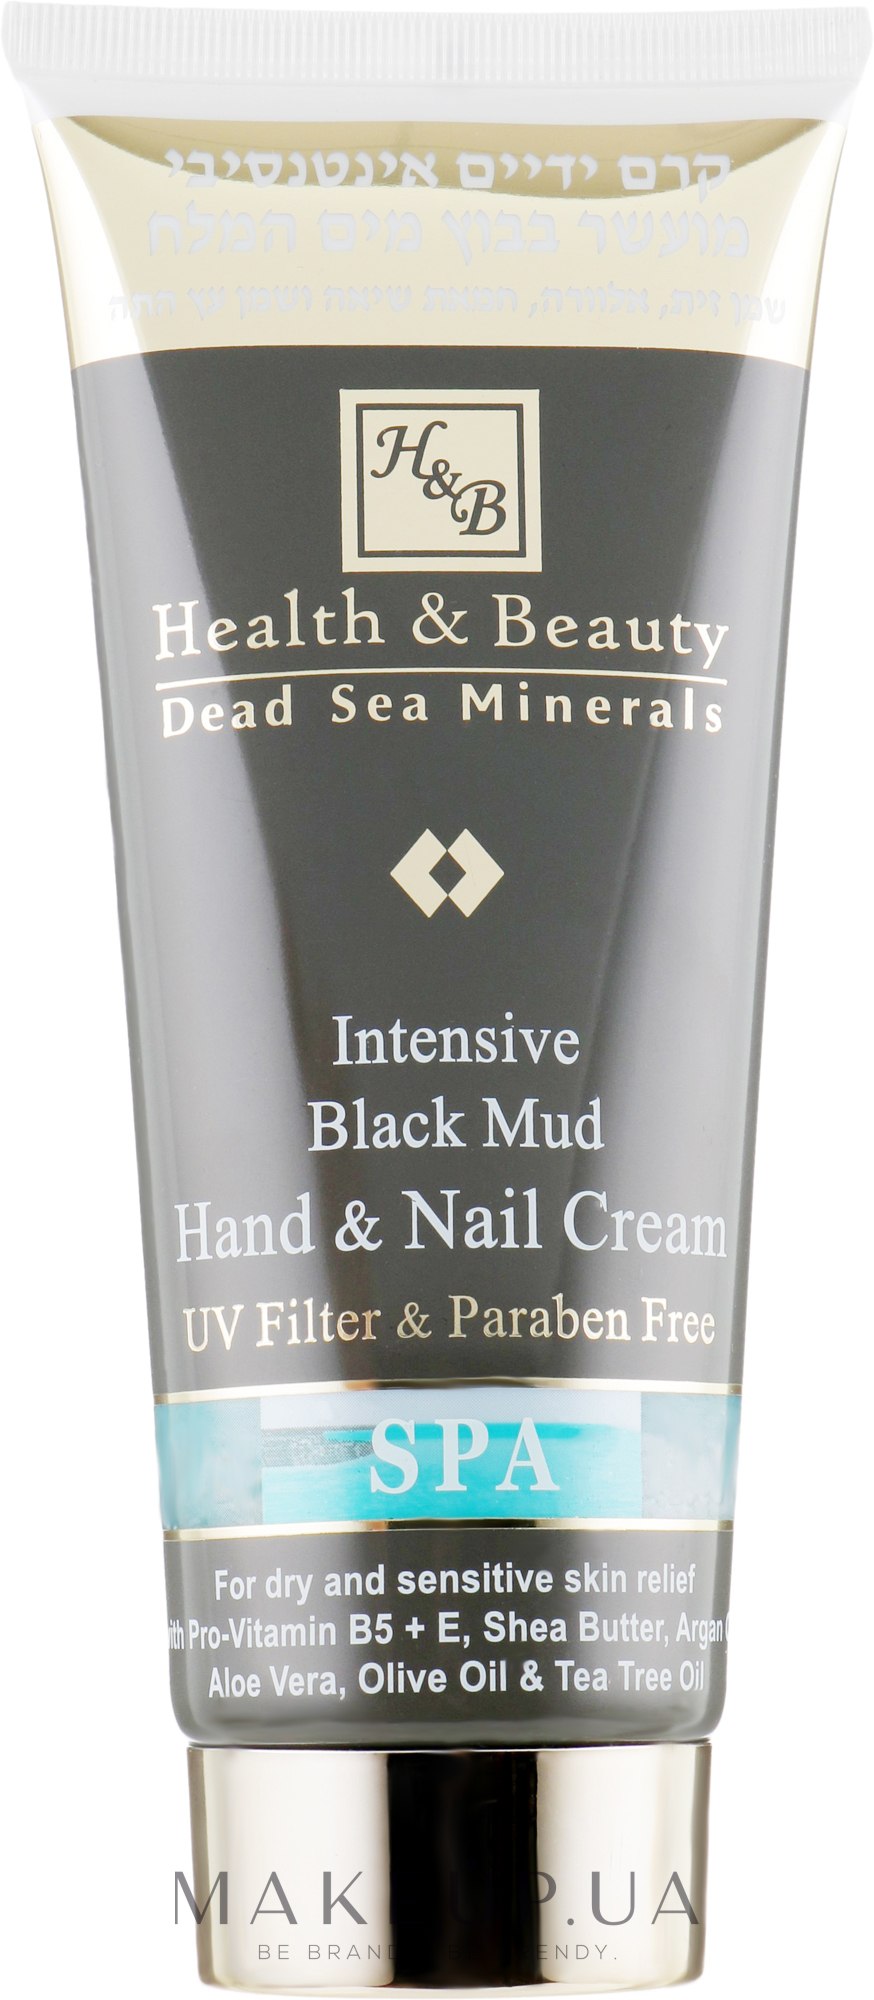 Інтенсивний крем для рук і нігтів з гряззю Мертвого моря - Health and Beauty Intensive Dlack Mud Hands & Nails Cream — фото 200ml